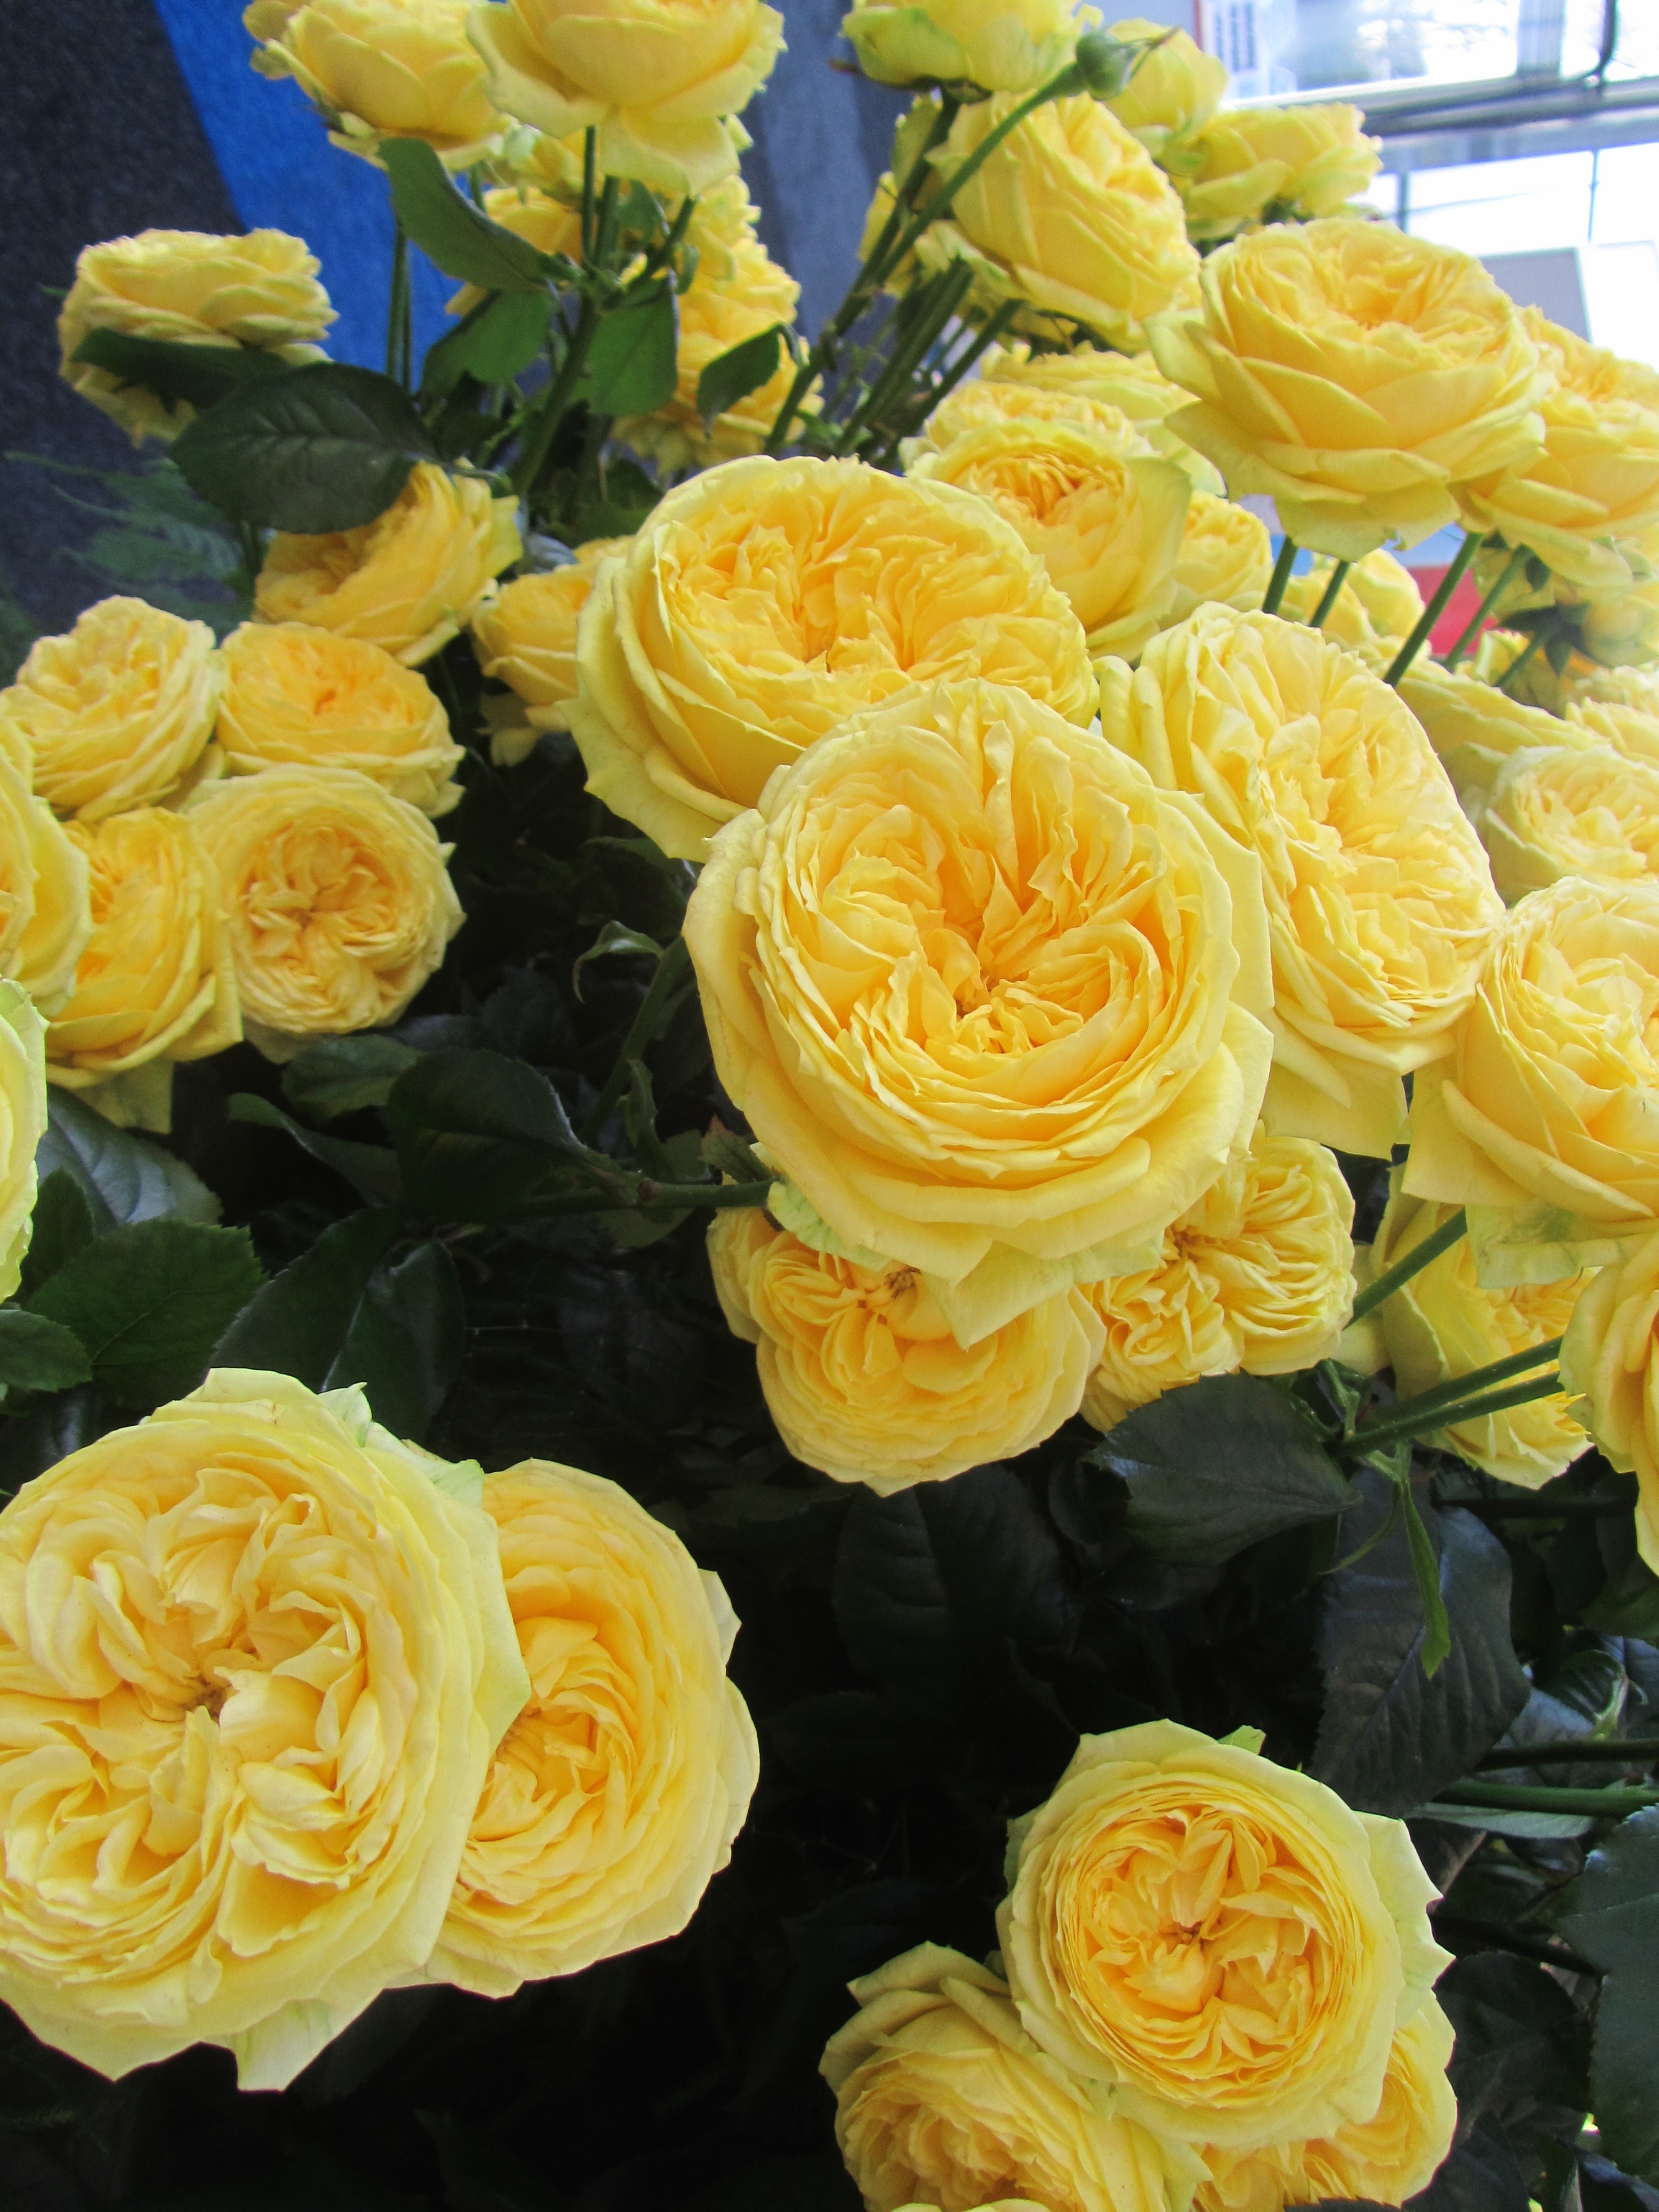 Hoa hồng bụi Catalina Spray cao 1.2m, hoa 11cm, vàng chanh, thơm, đơn